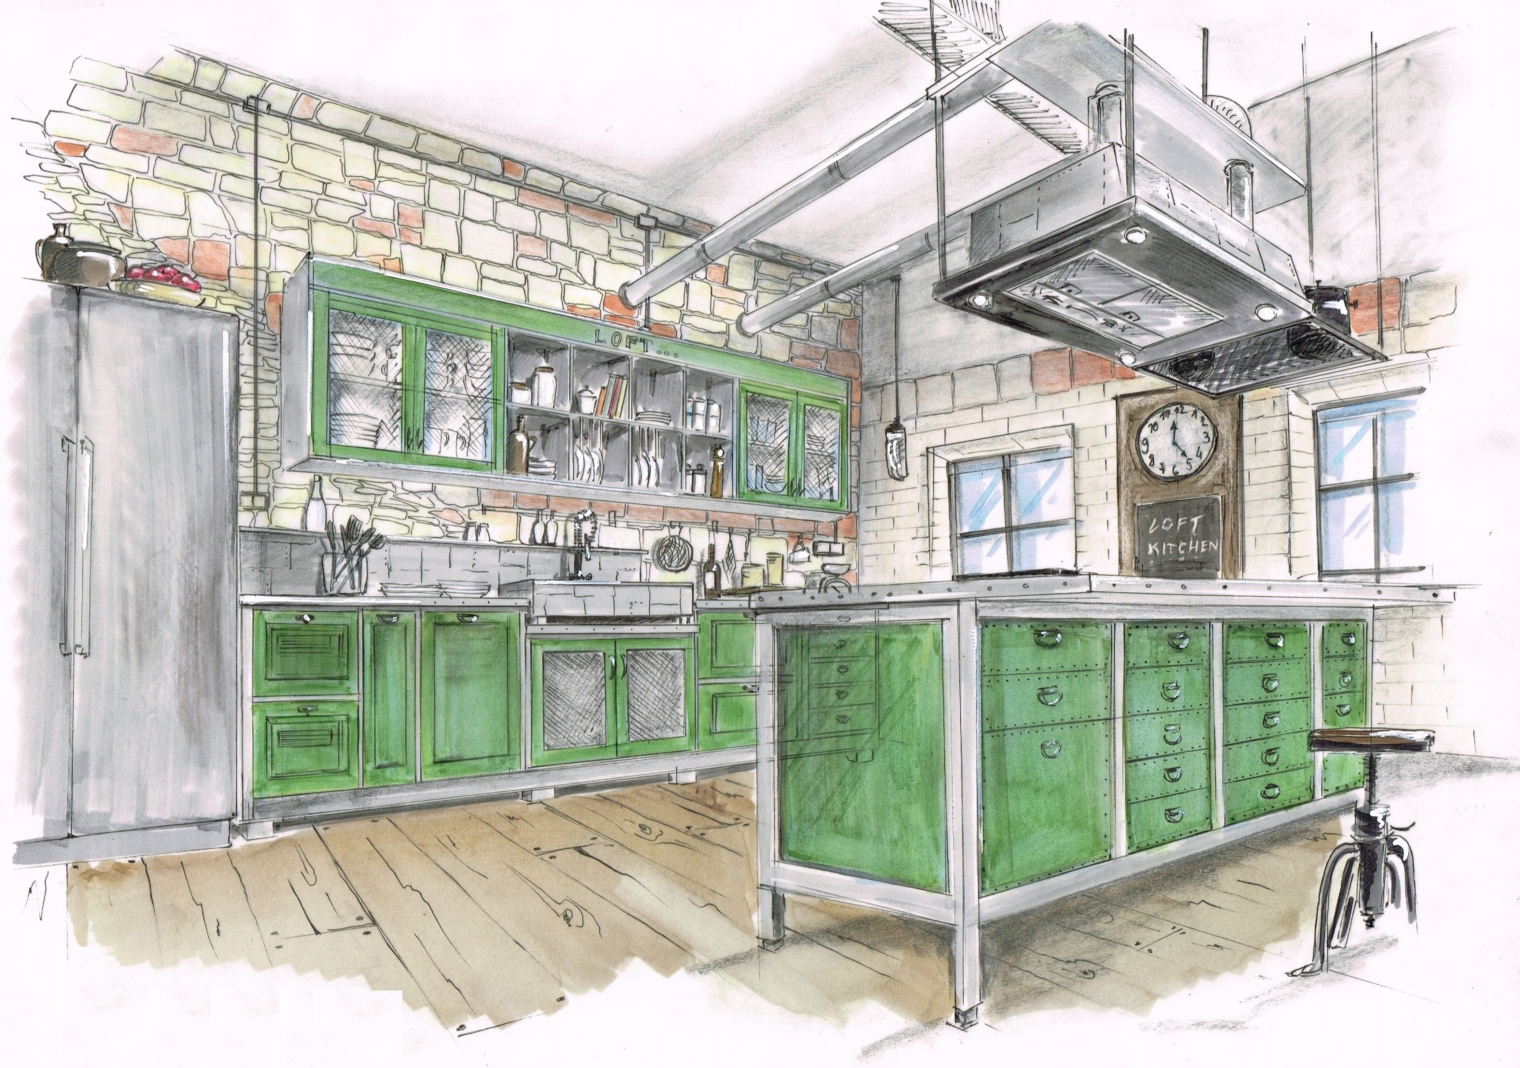 Küche im Industriestyle, in Werkstatt grün, Türen mit Streckmetall Füllung